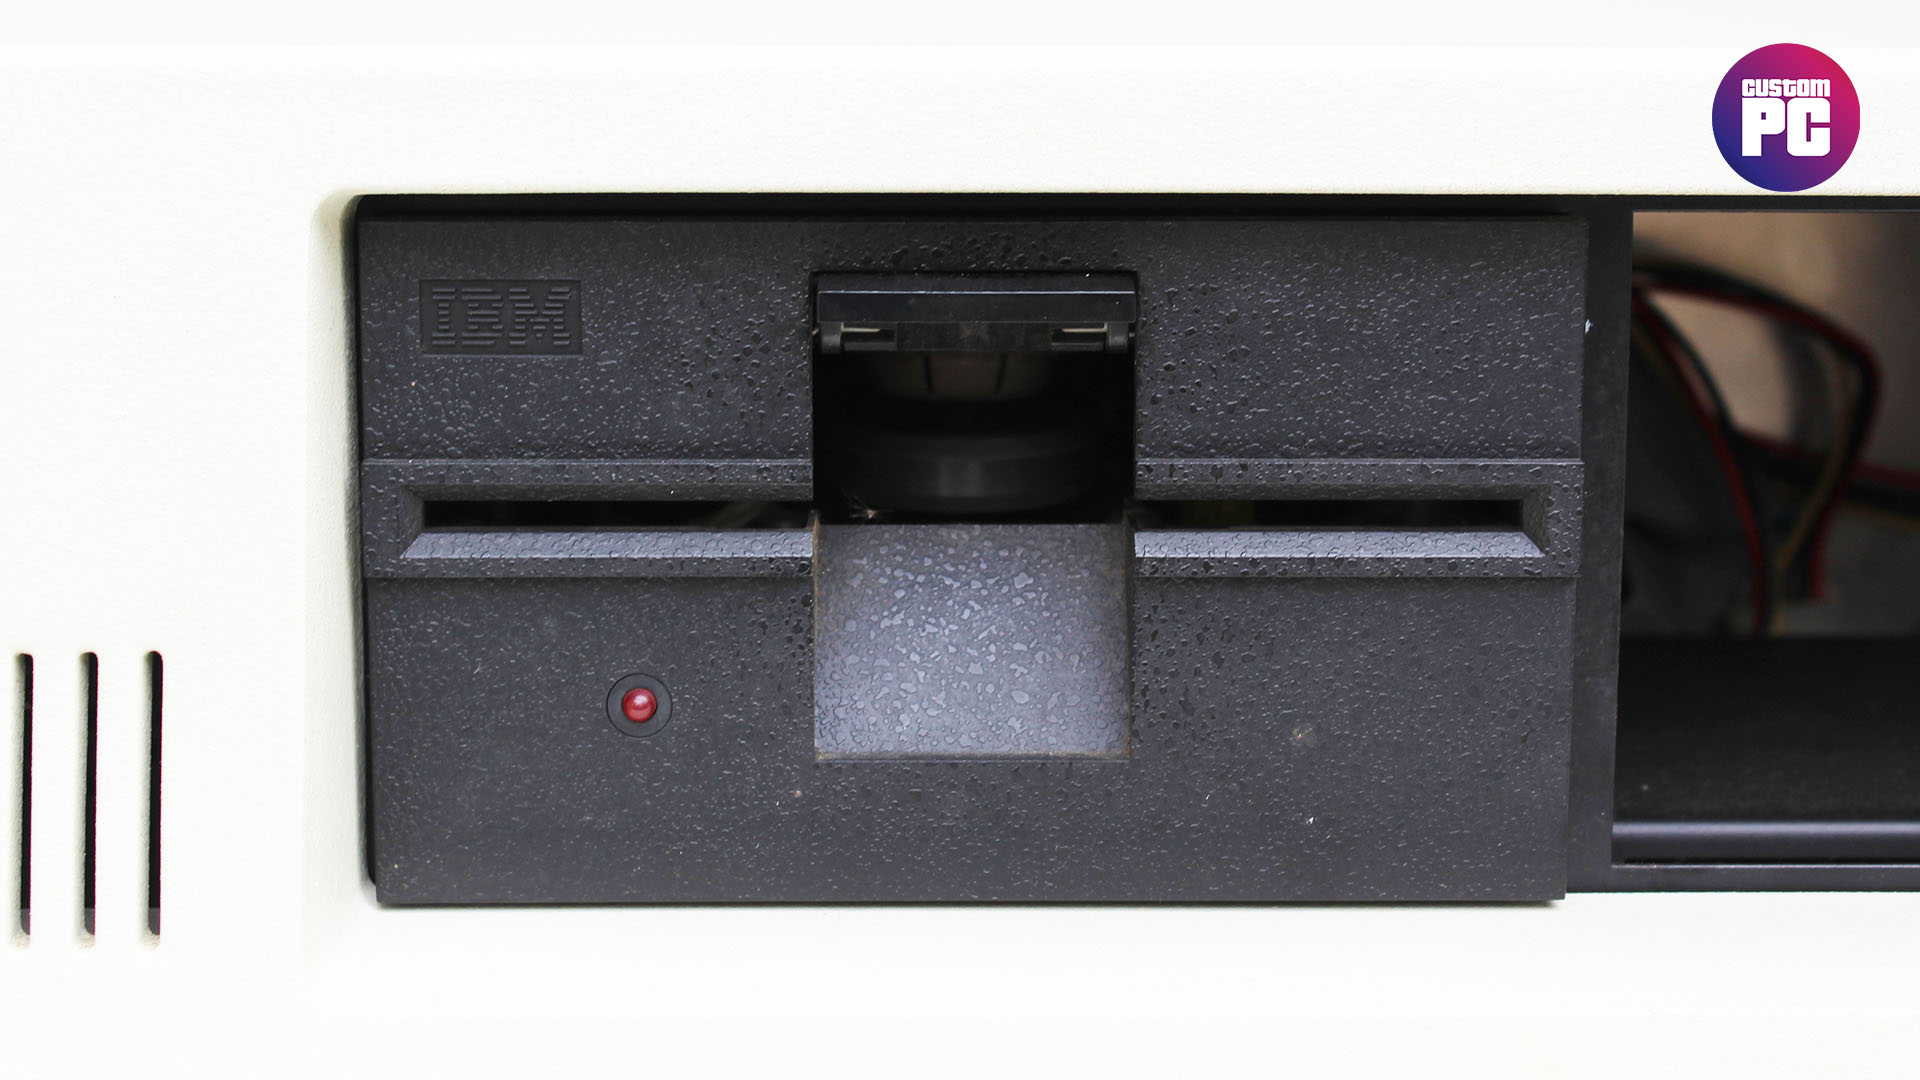 IBM PC 5150 5.25-inch floppy drive